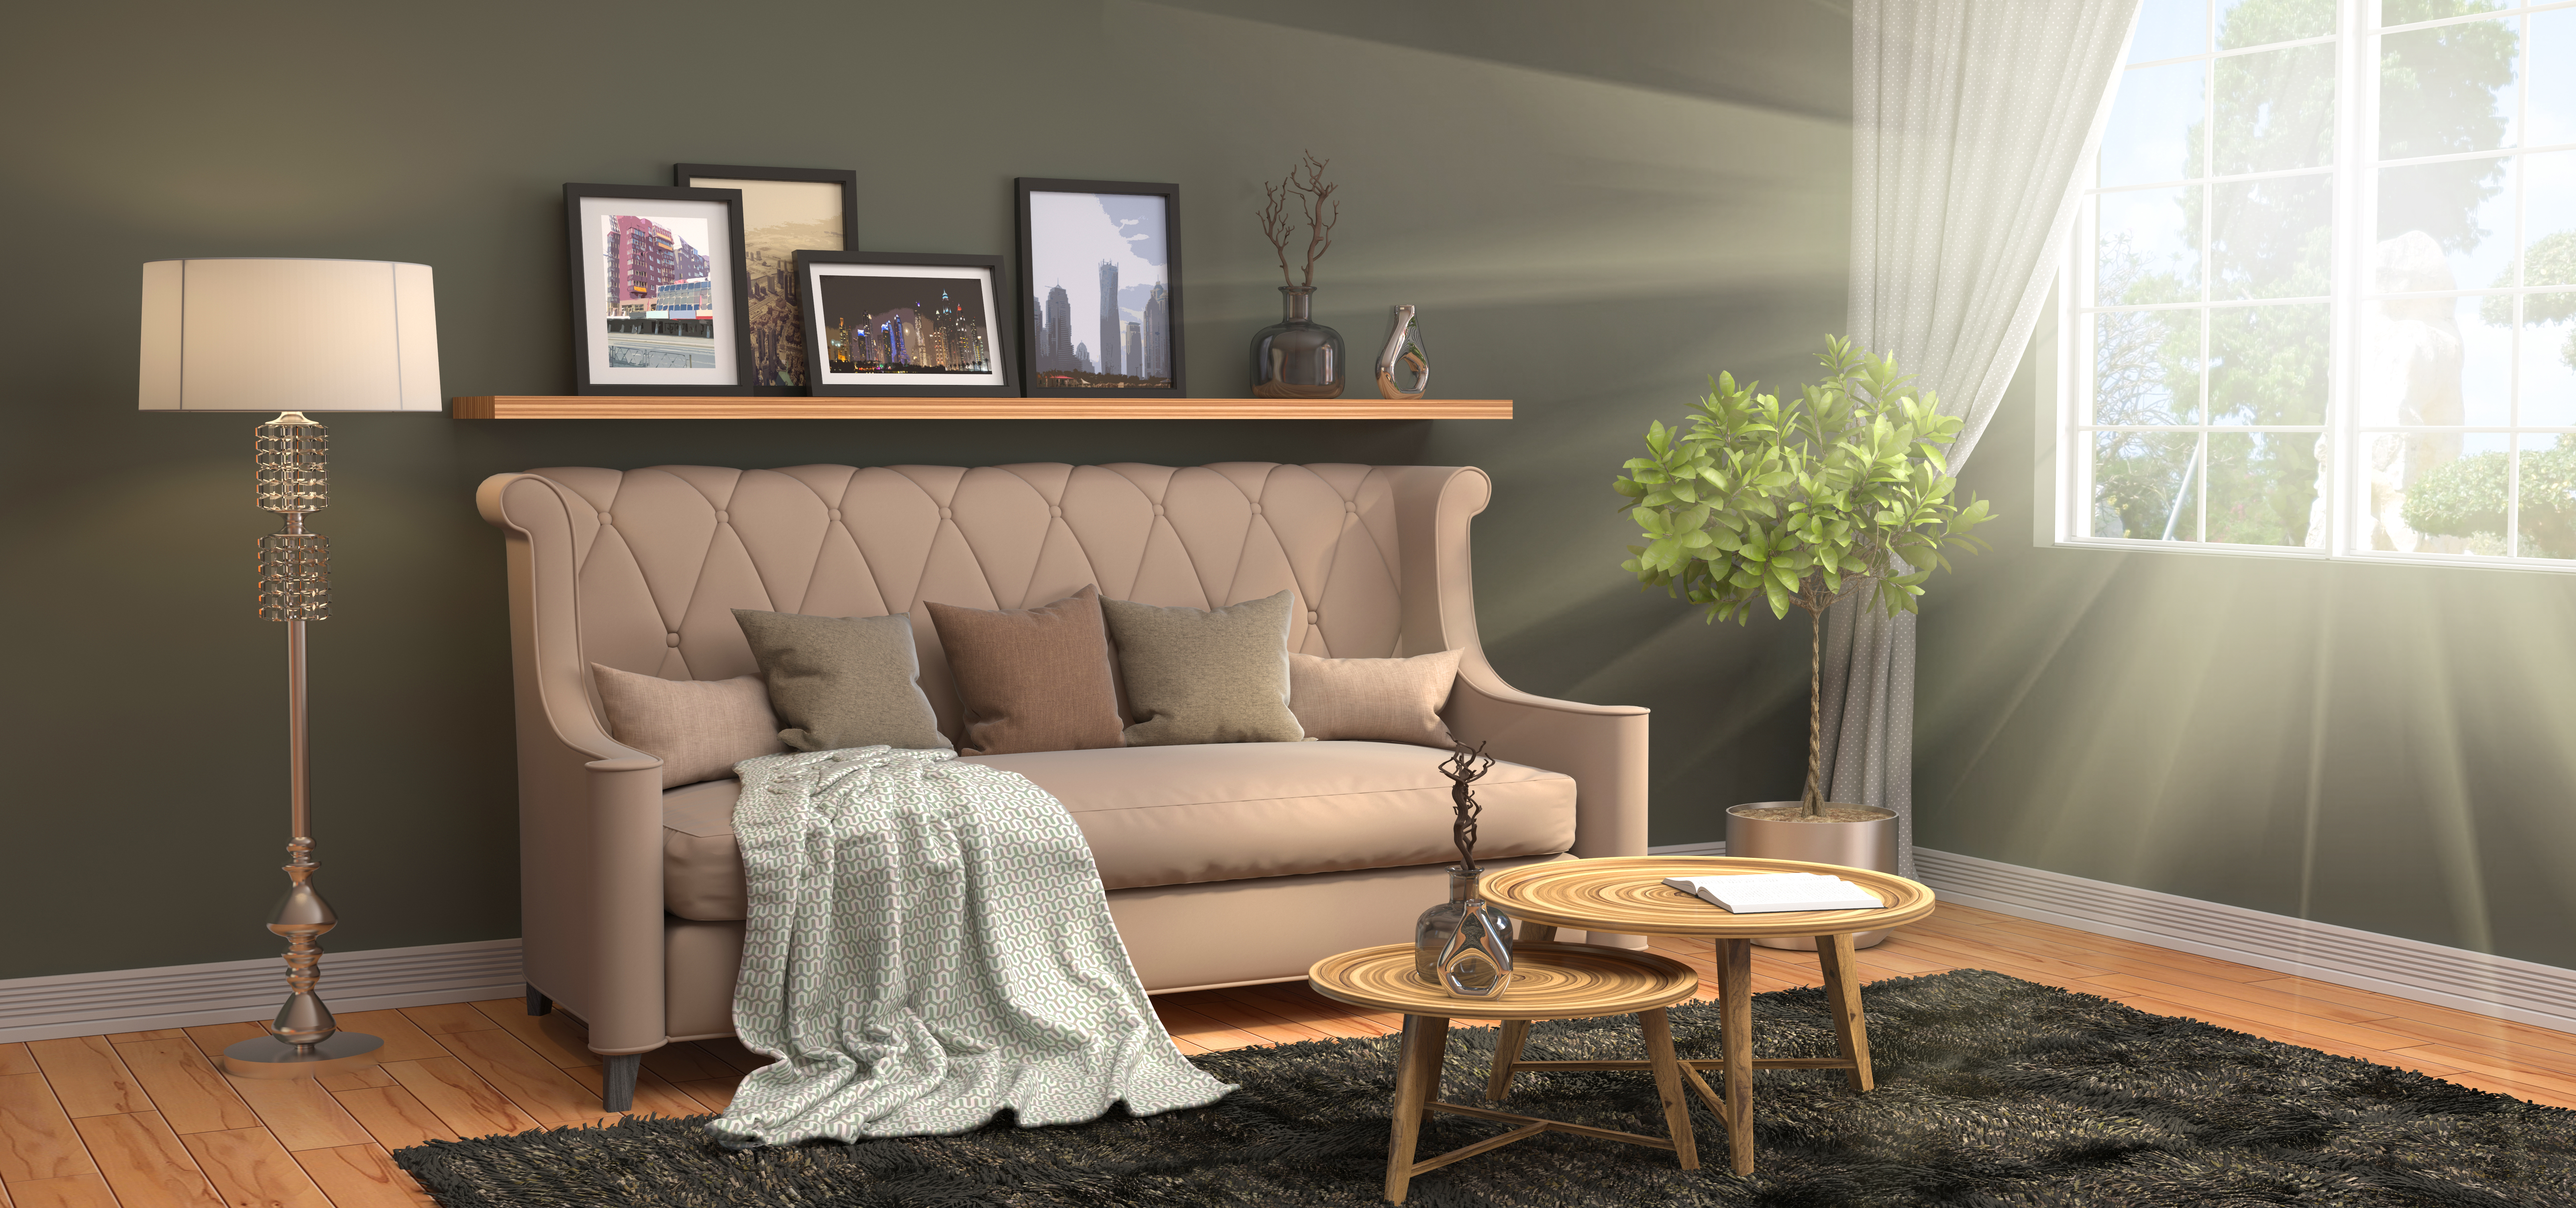 Wall Showcase Design Ideas for Living Room - HomeLane Blog